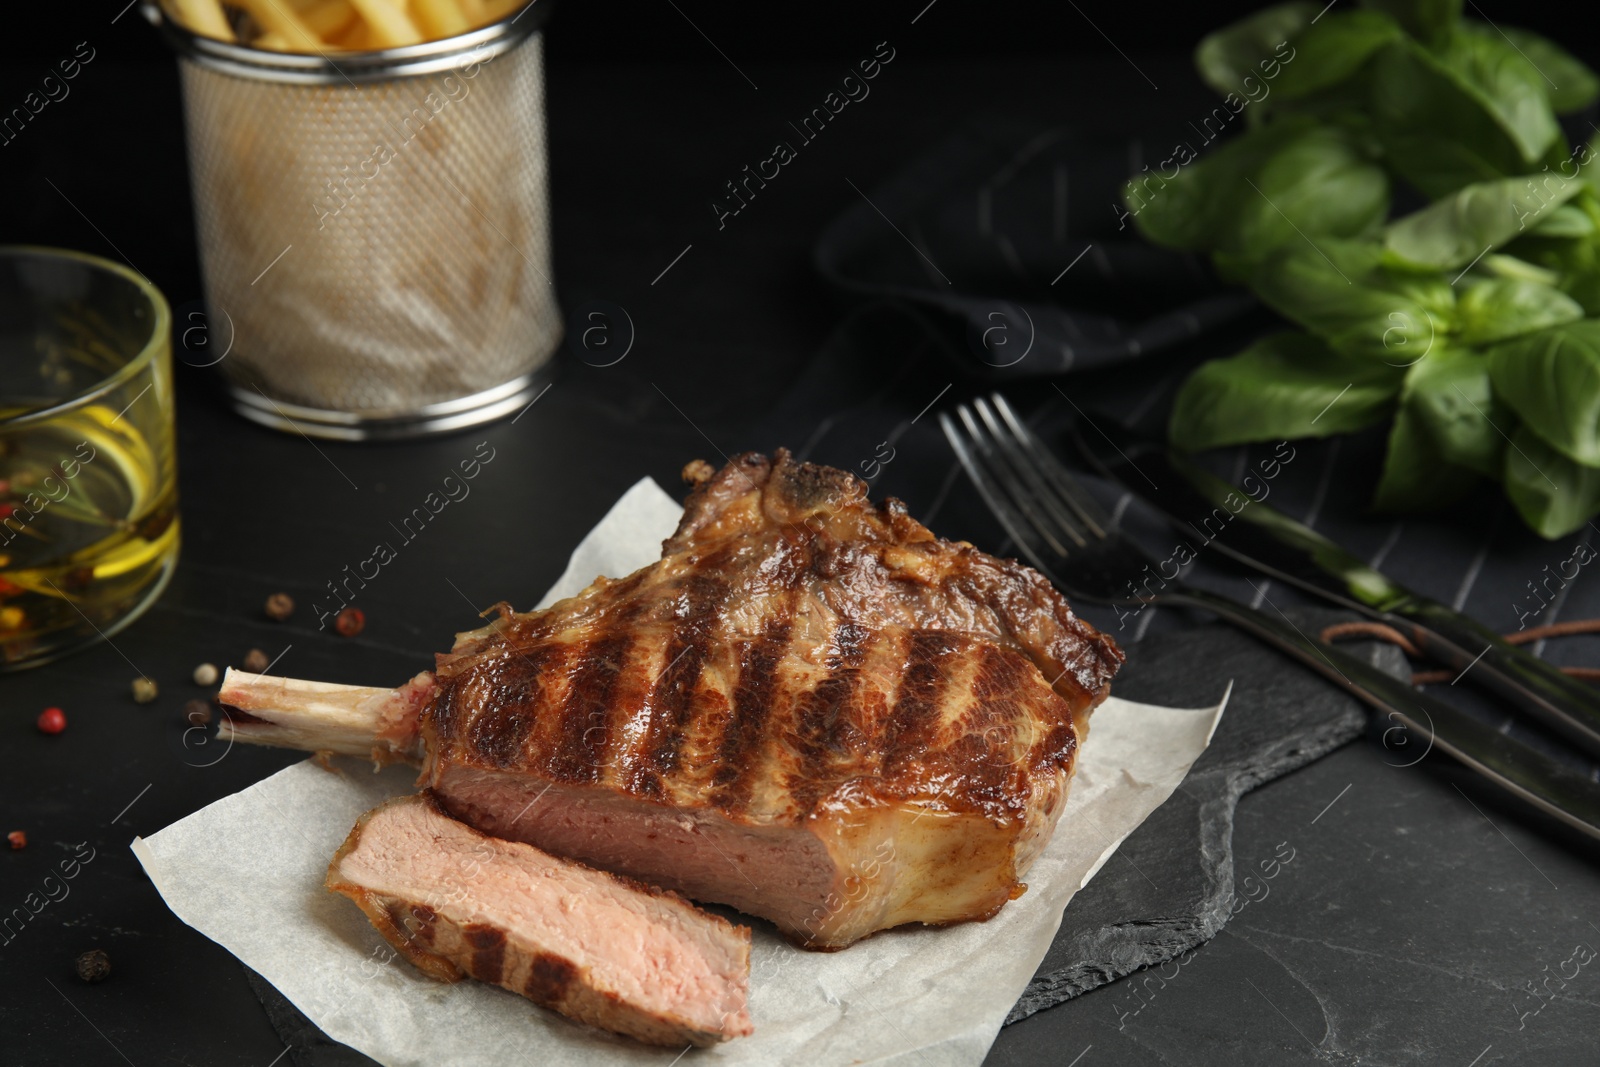 Image of Tasty grilled steak served on black table